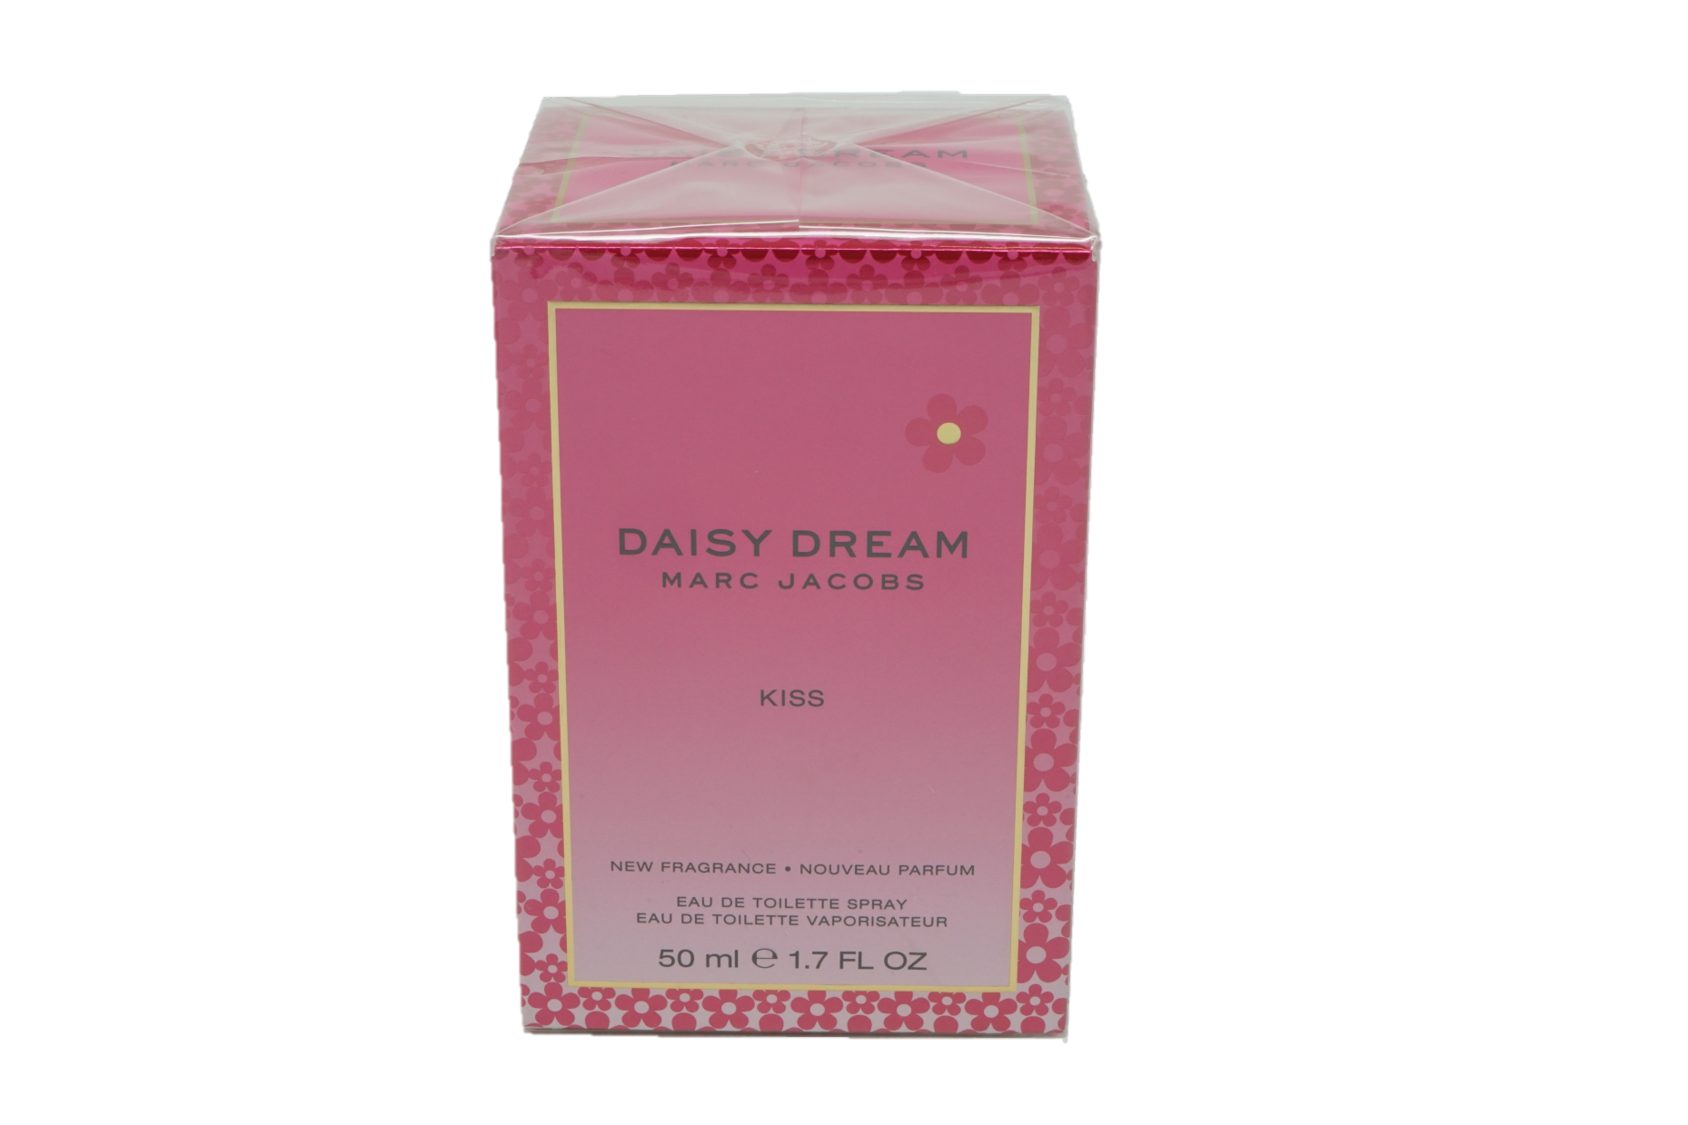 MARC JACOBS Eau de Toilette Marc Jacobs Daisy Dream Kiss Eau de Toilette Spray 50 ml